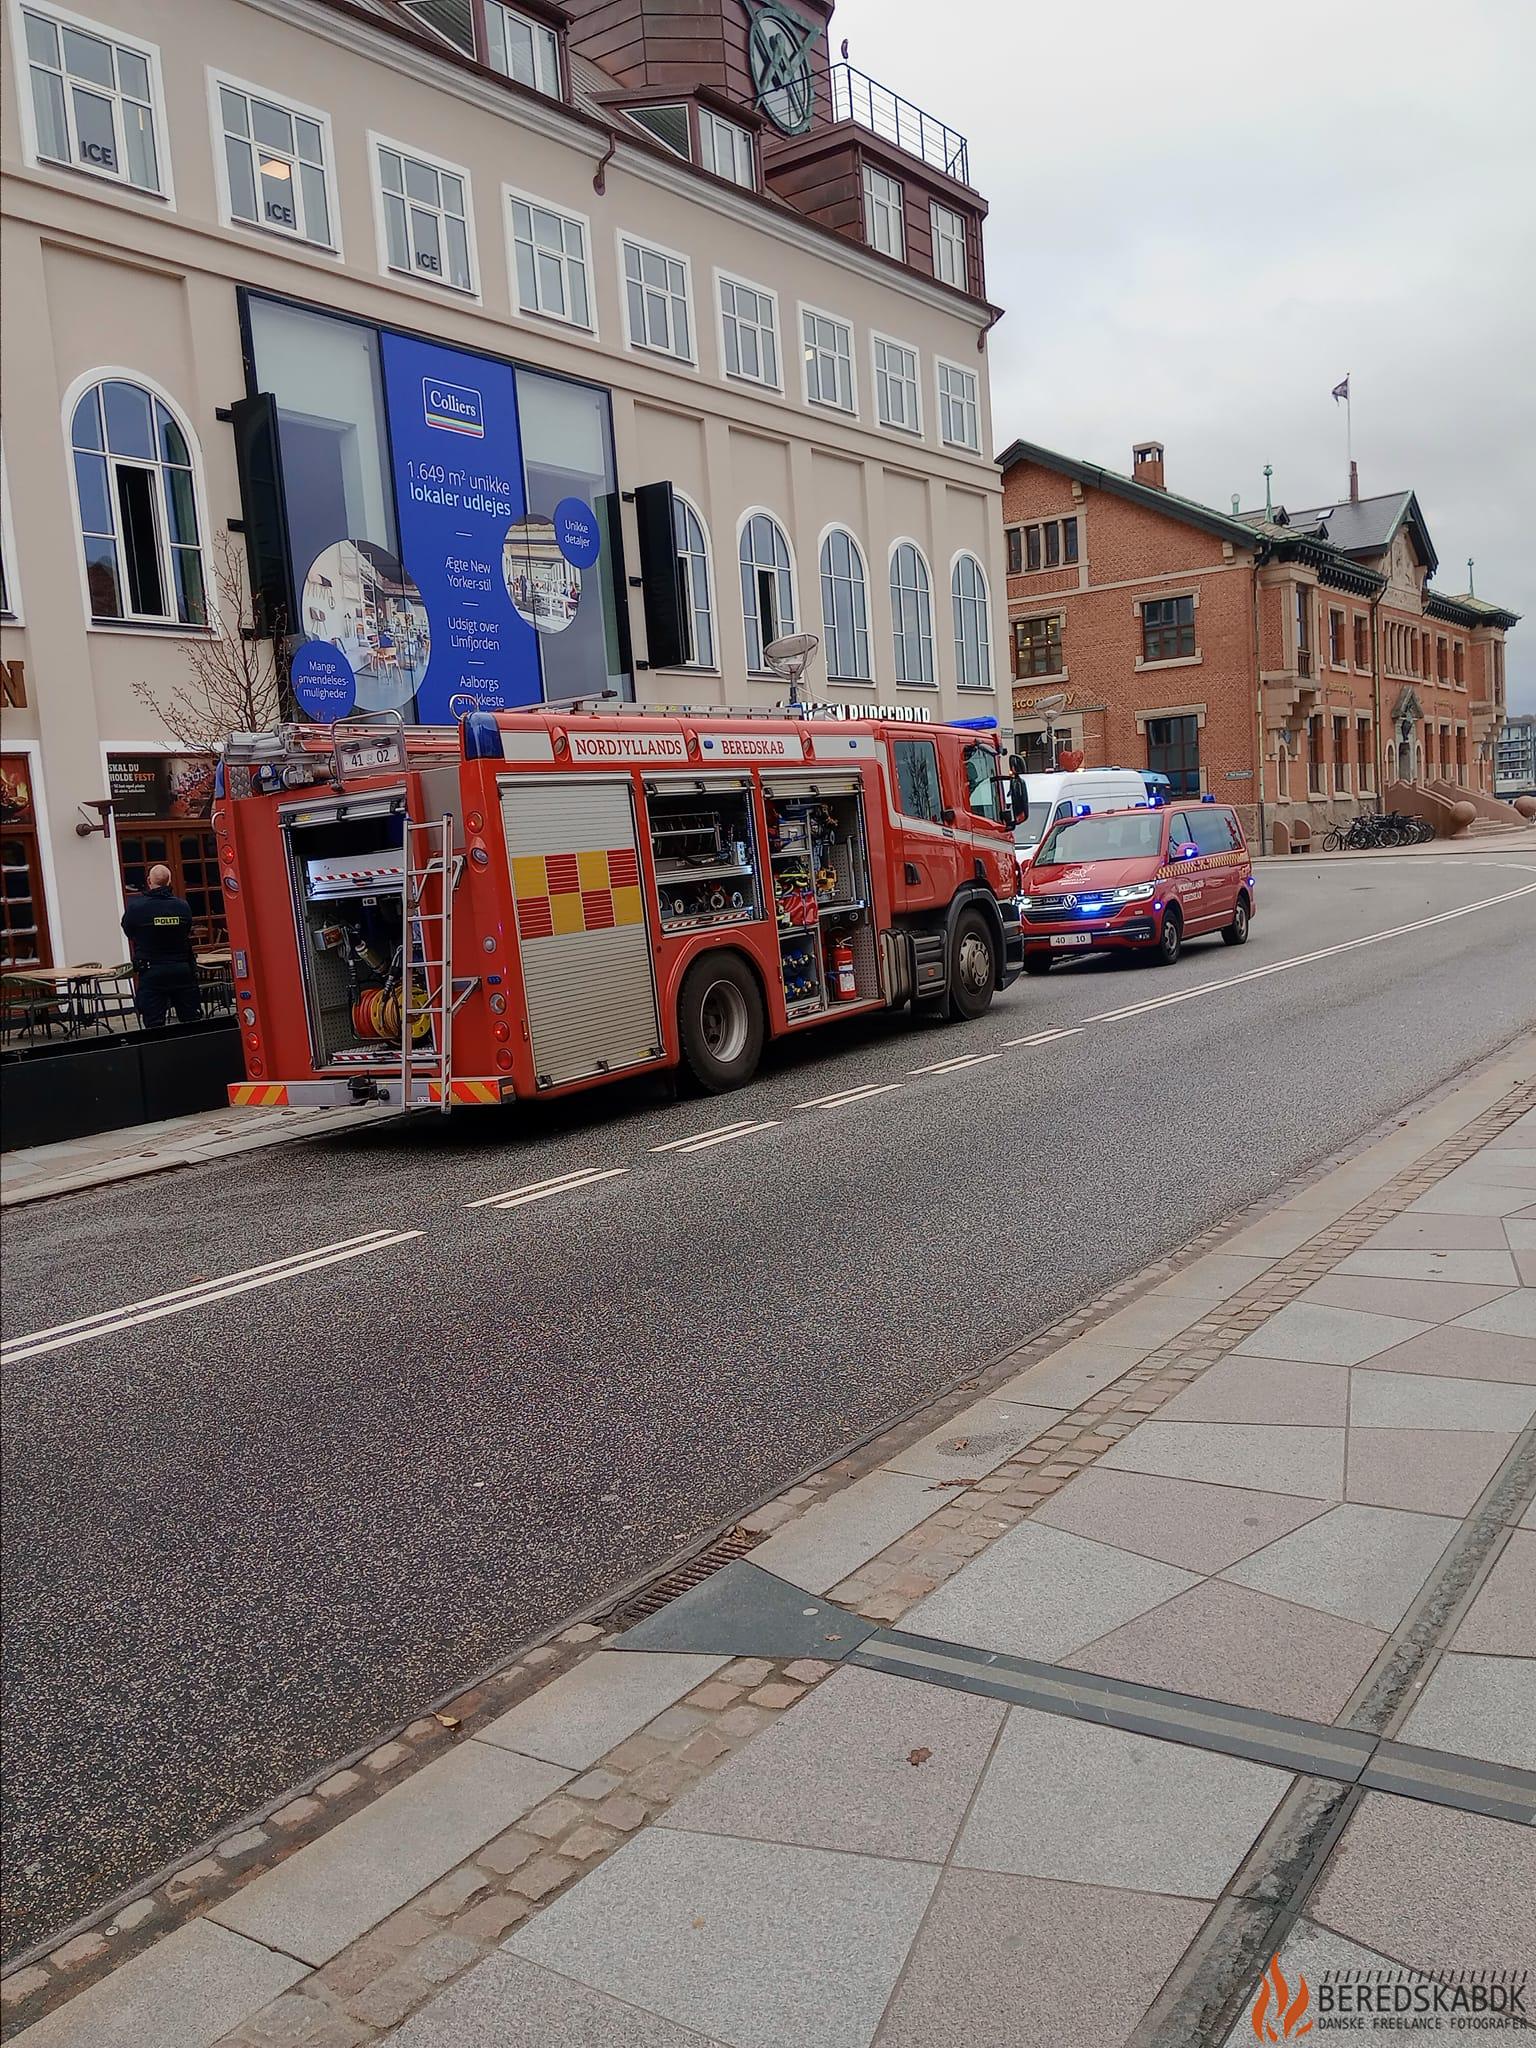 16/11-23 Aalborg: Brand i Restaurant flammen